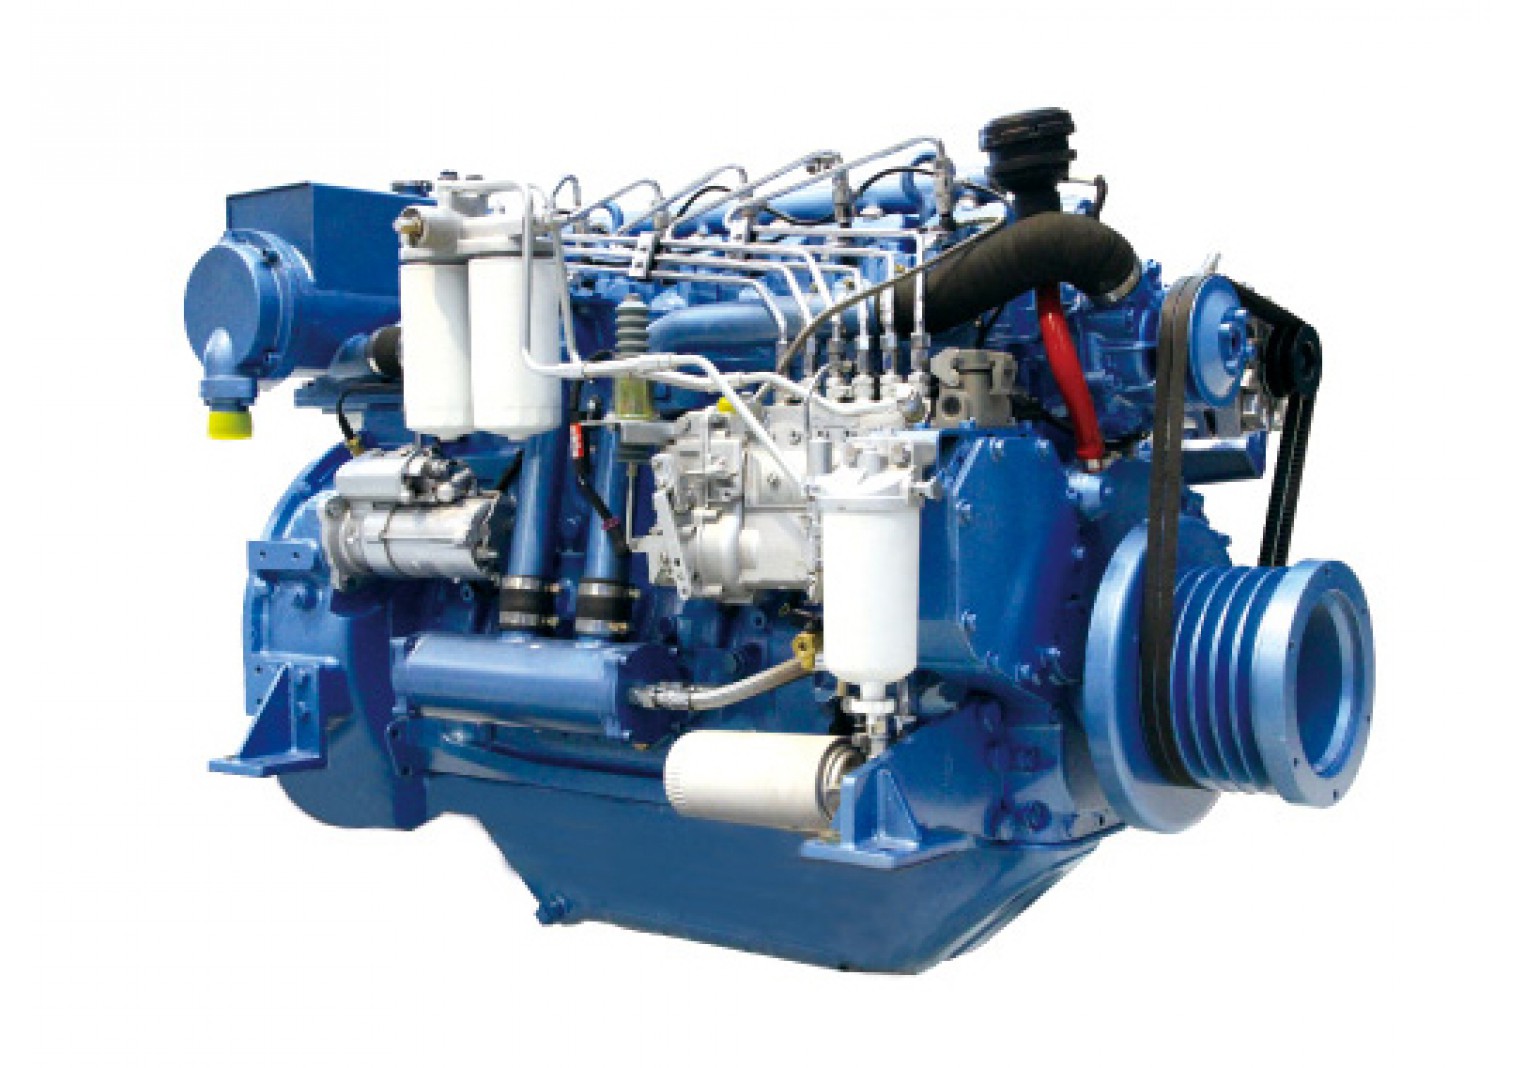 Marine Diesel Engine WP6C250-23